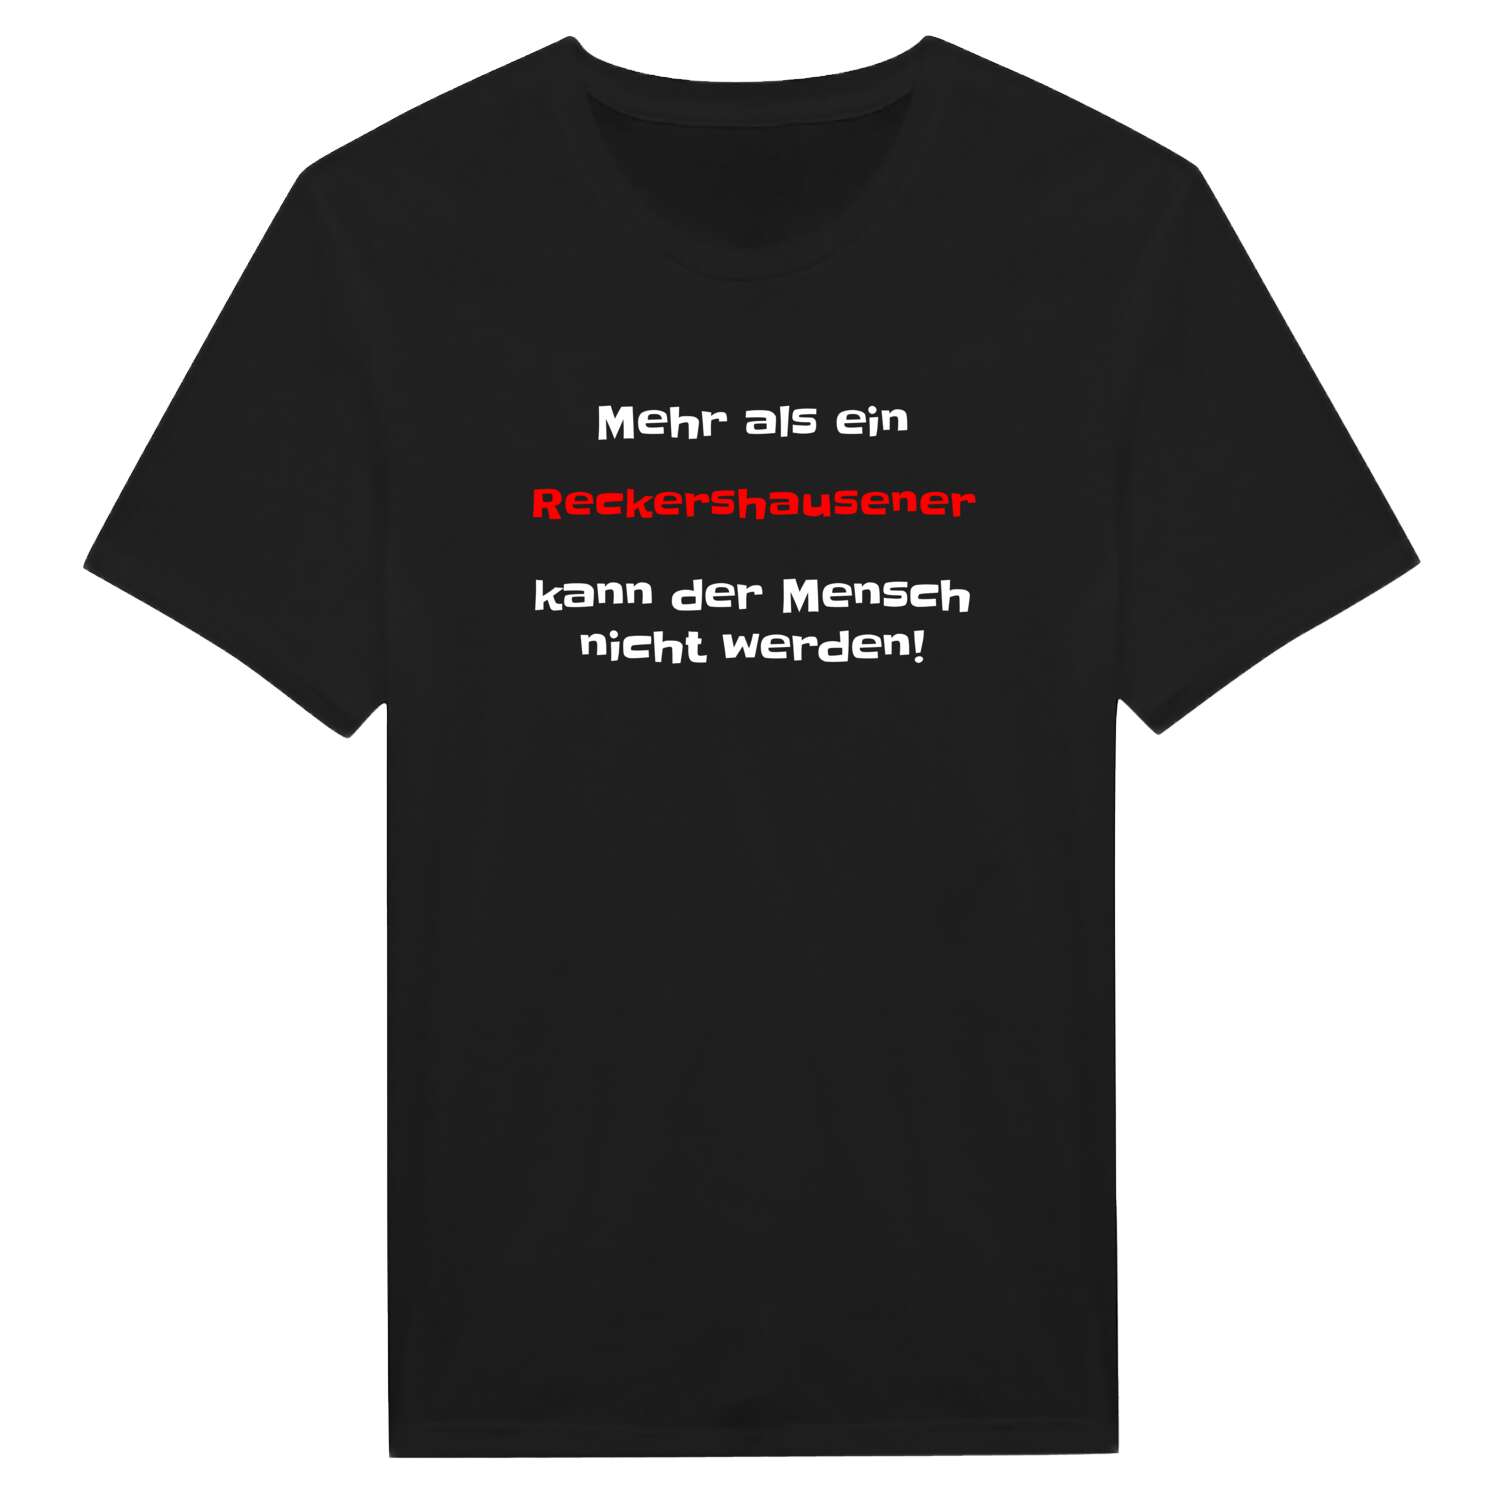 Reckershausen T-Shirt »Mehr als ein«